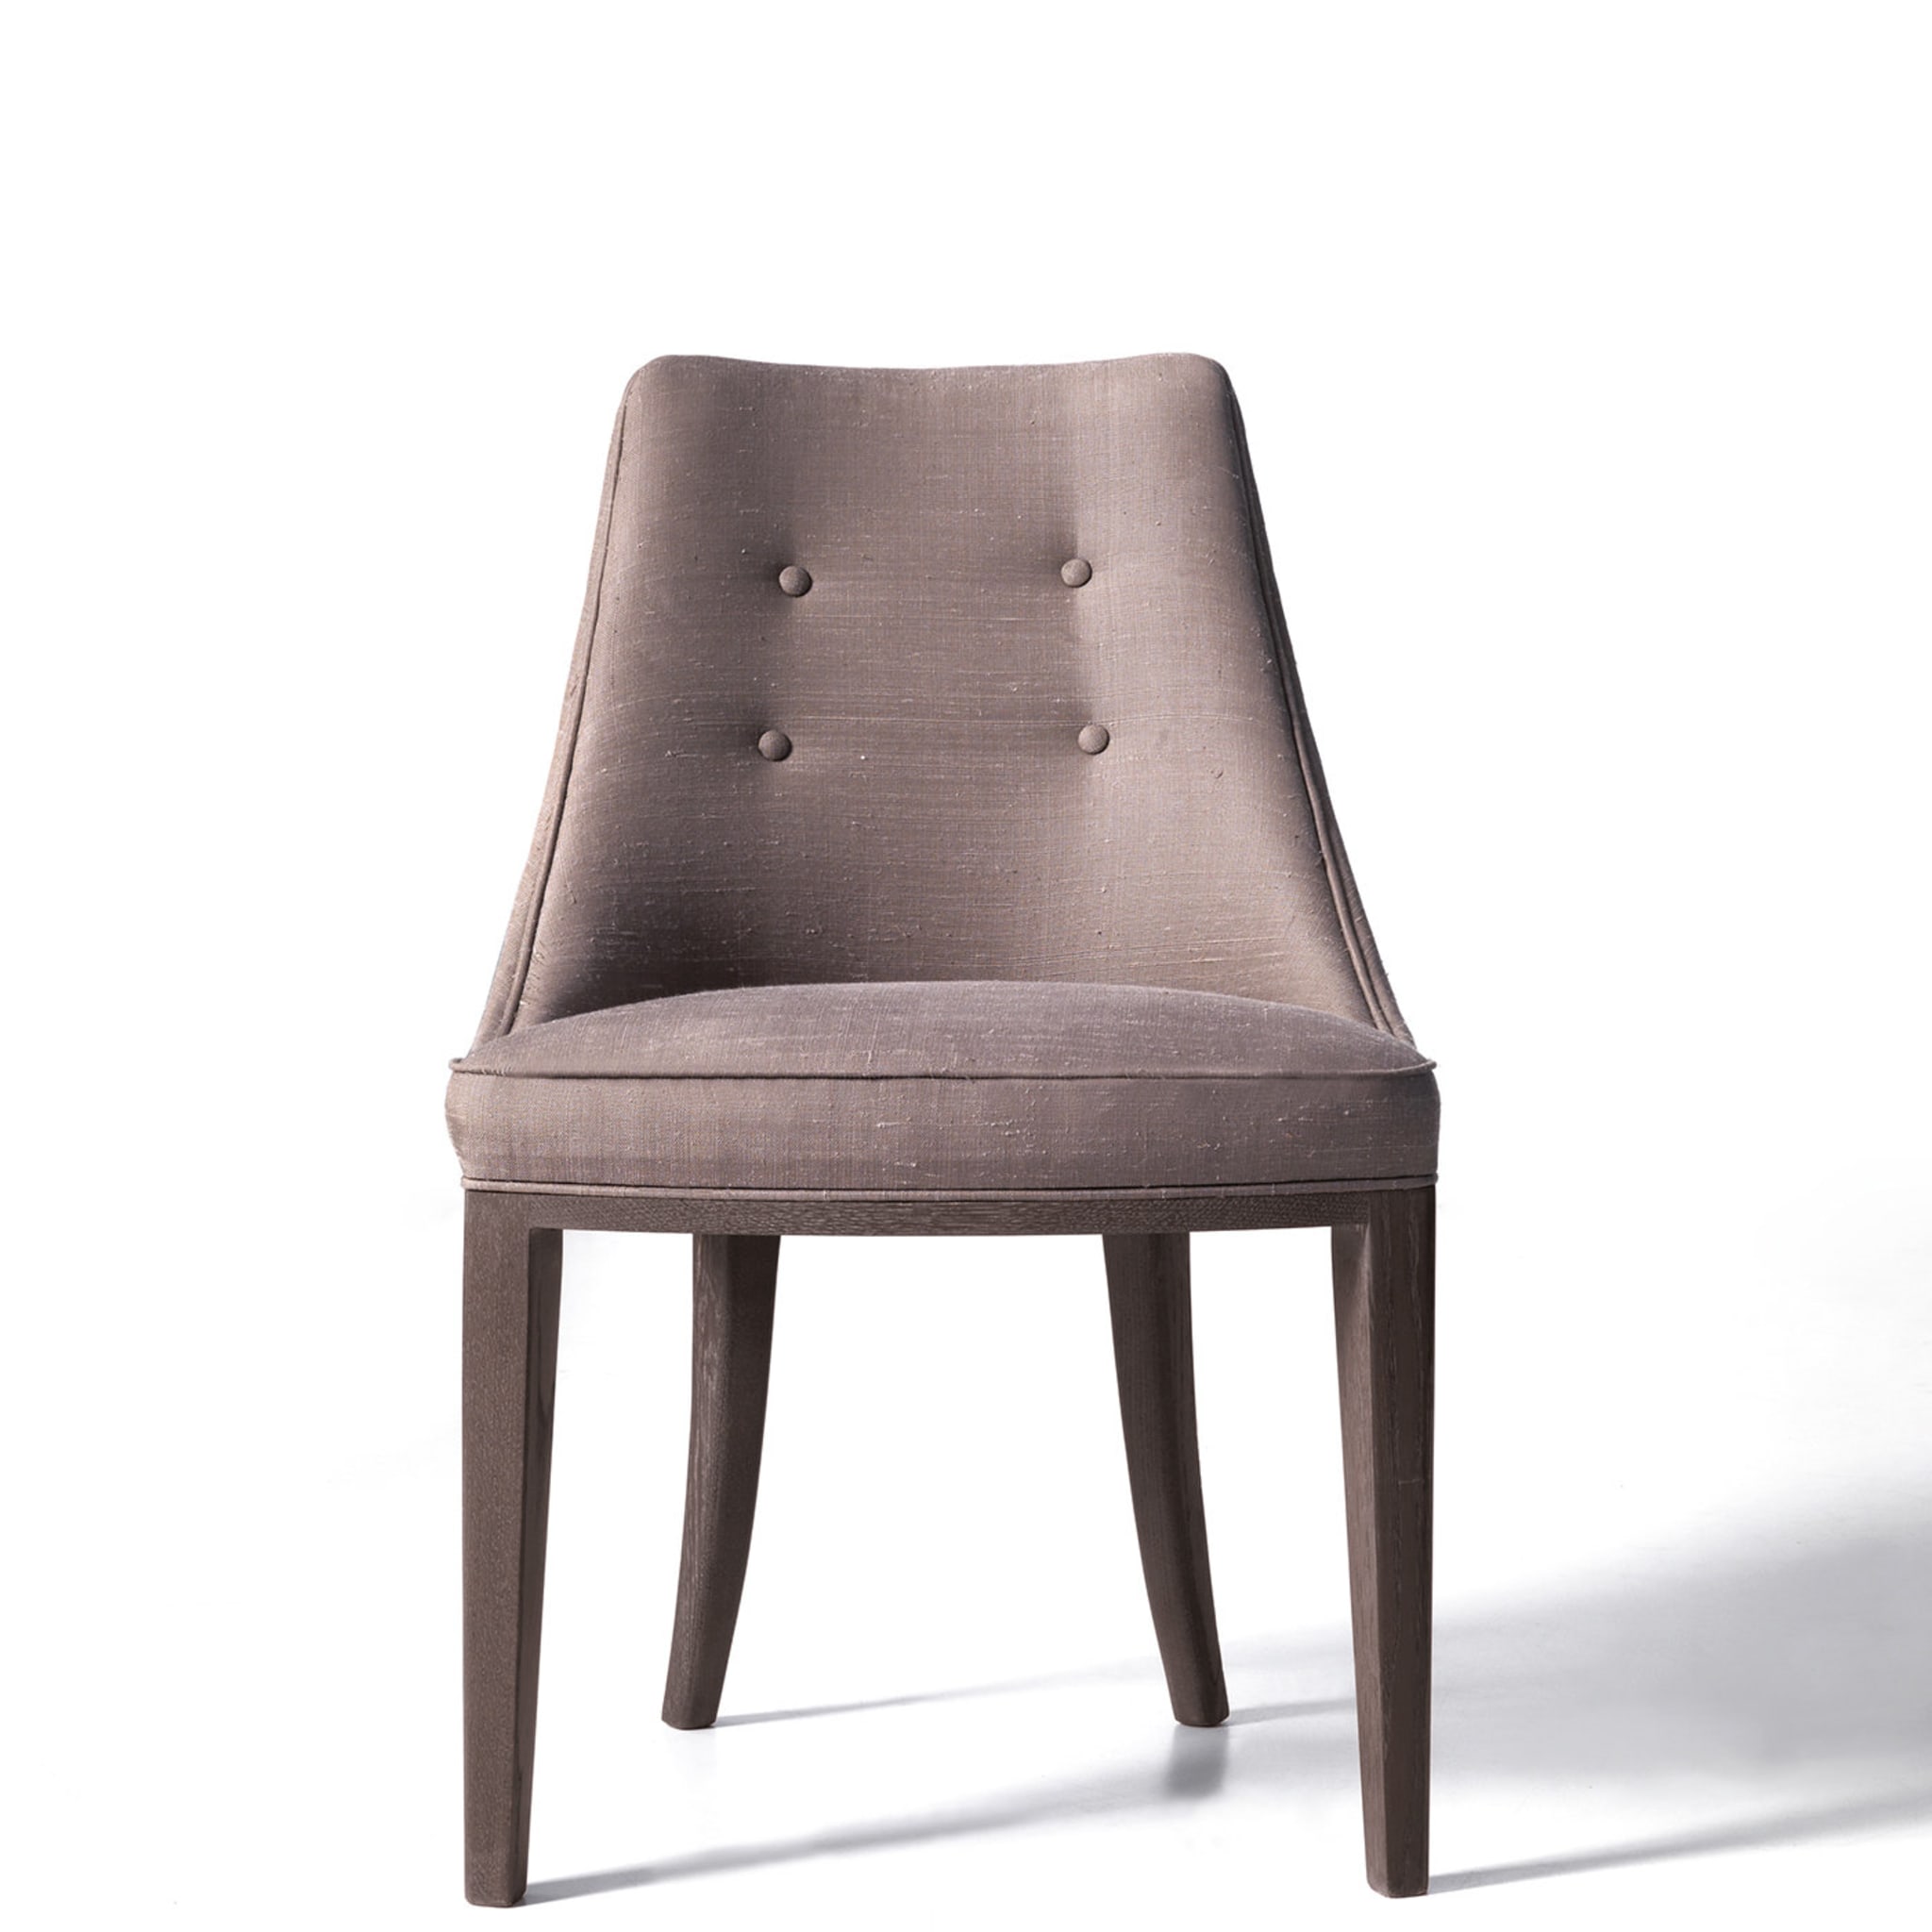 Gray Durmast Chair  - Alternative view 1